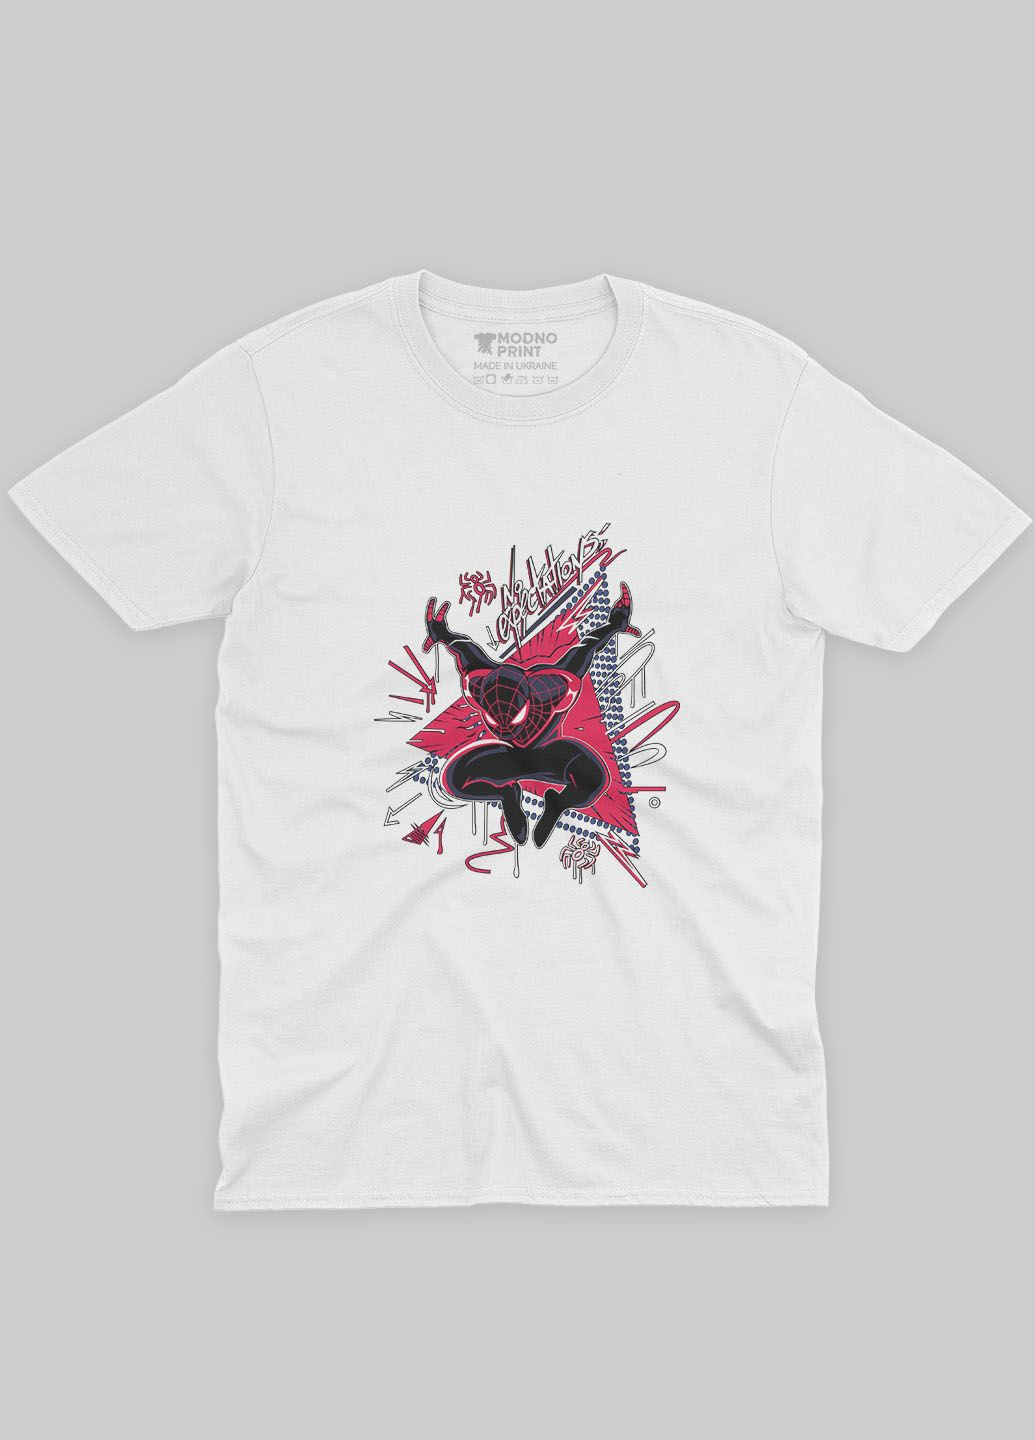 Белая демисезонная футболка для мальчика с принтом супергероя - человек-паук (ts001-1-whi-006-014-049-b) Modno